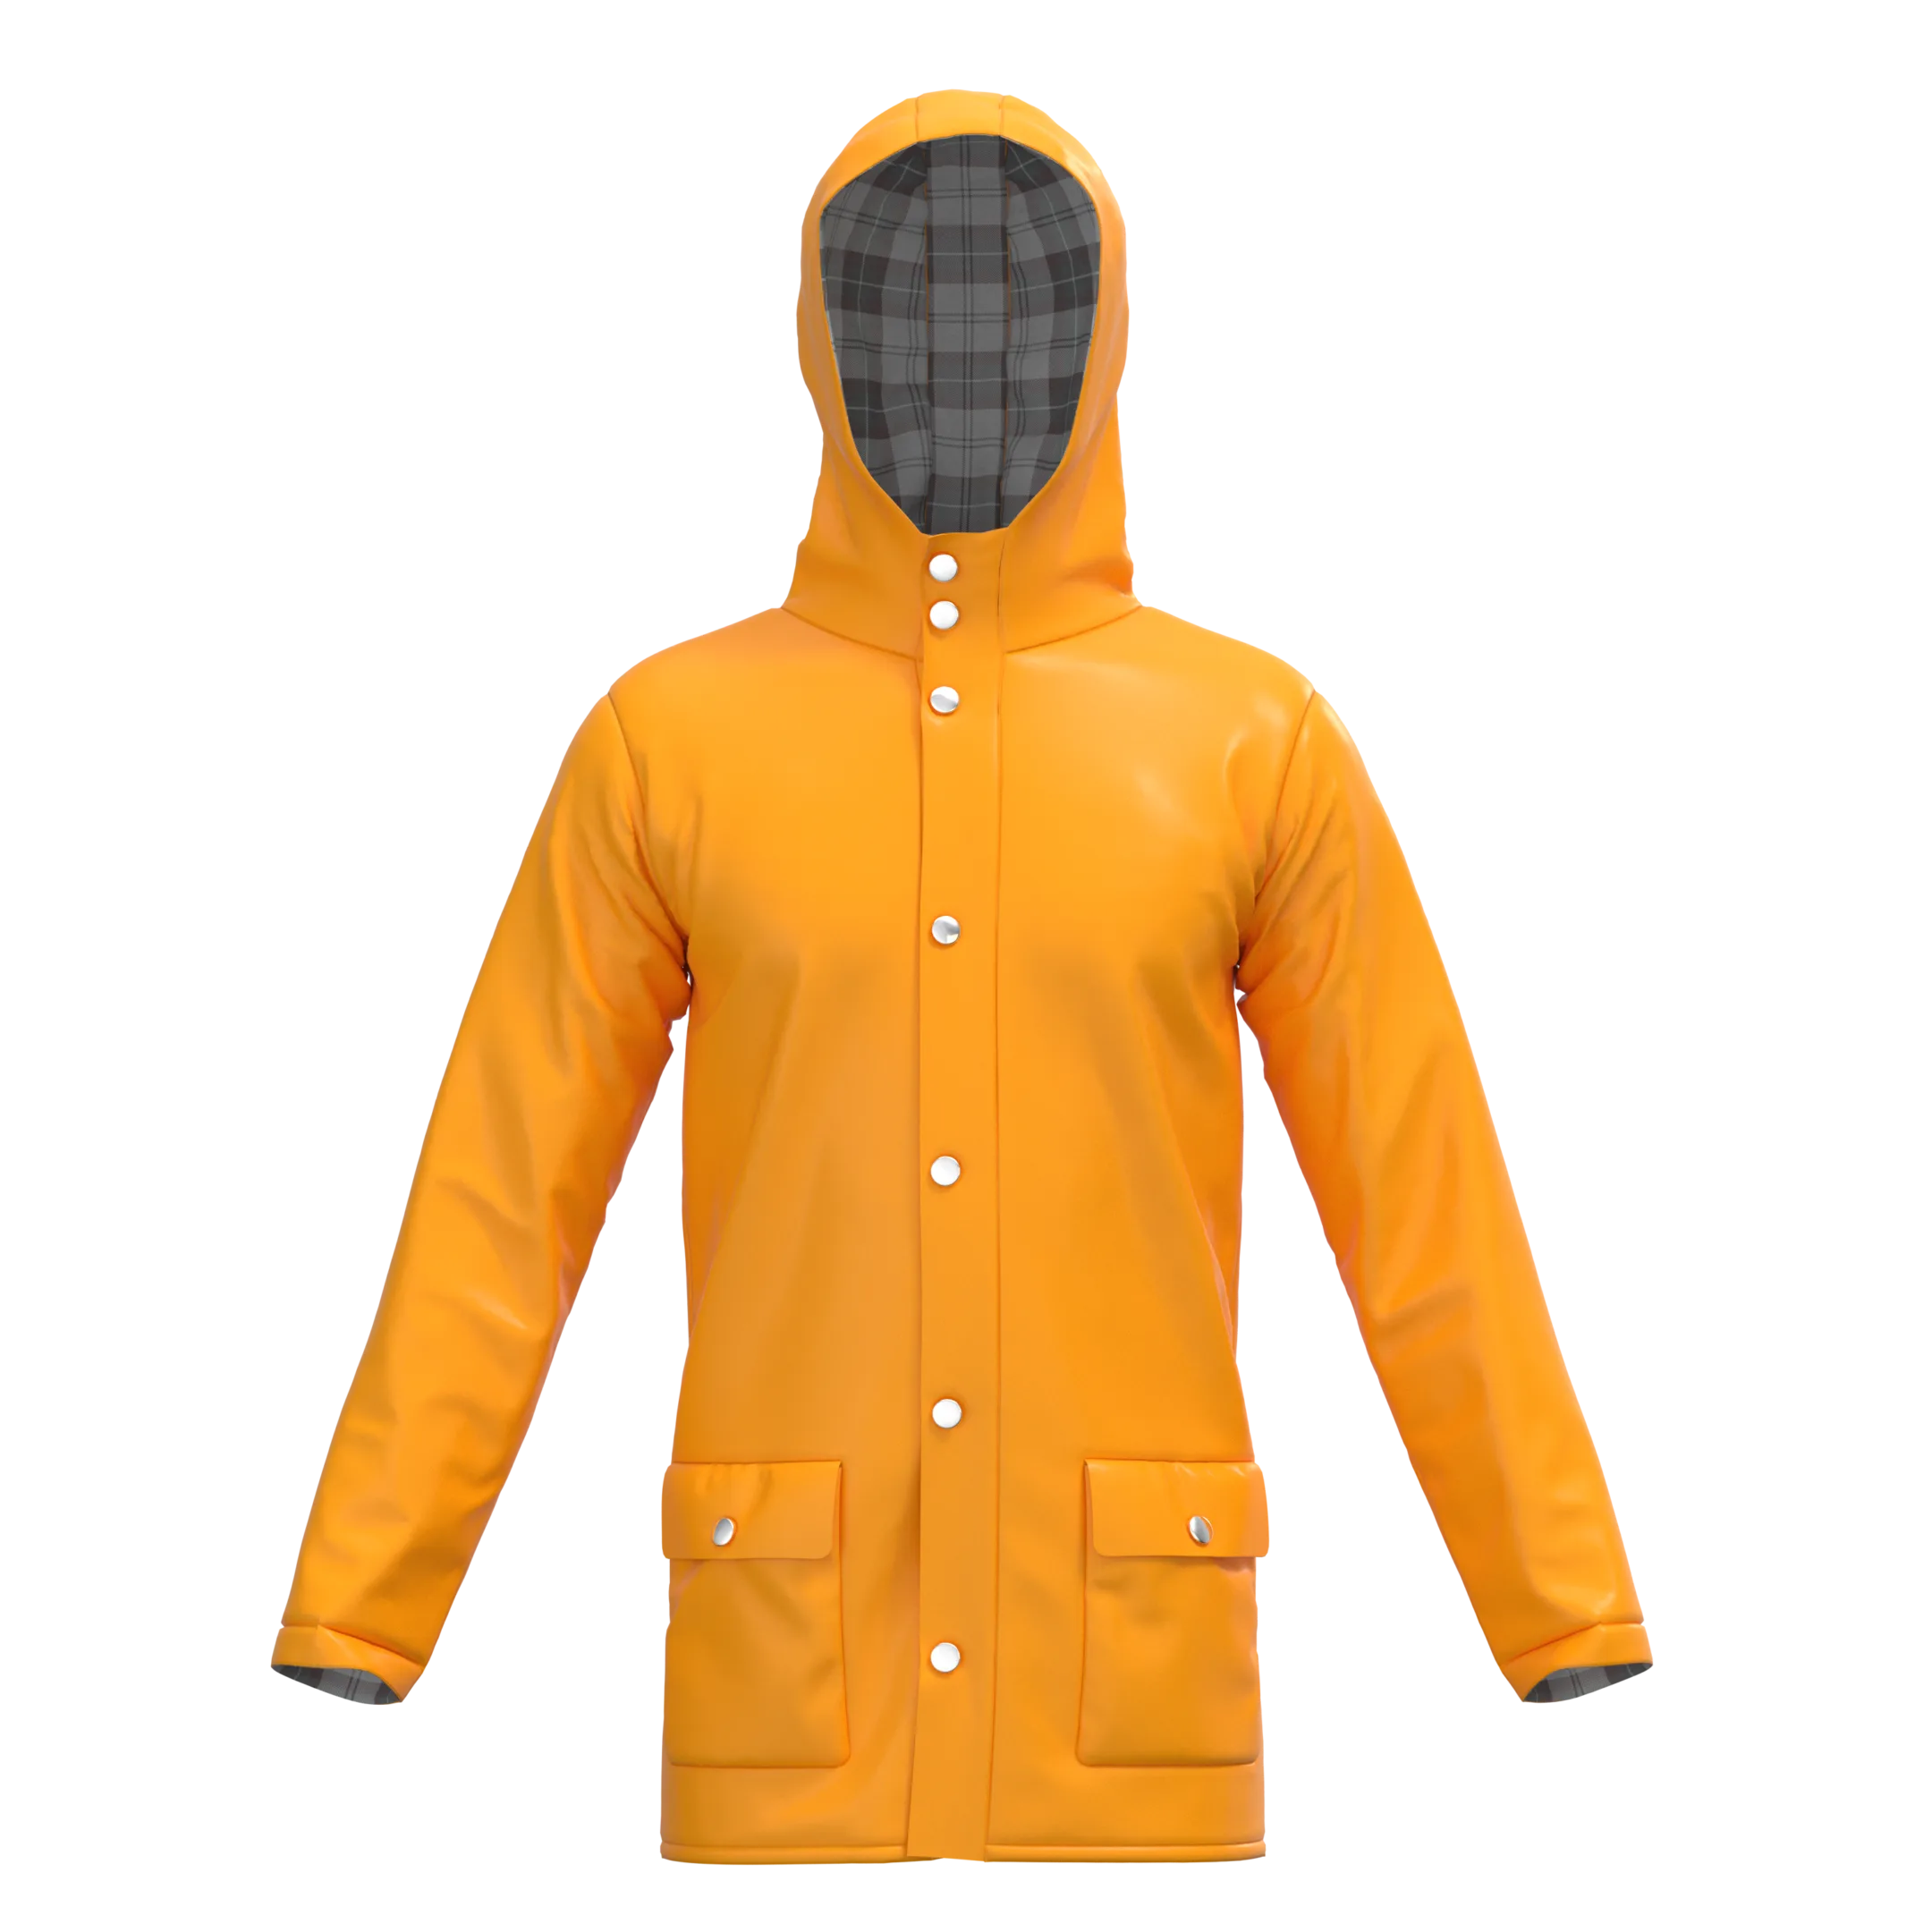 Rain Jacket - Marvelous designer - Clo3d